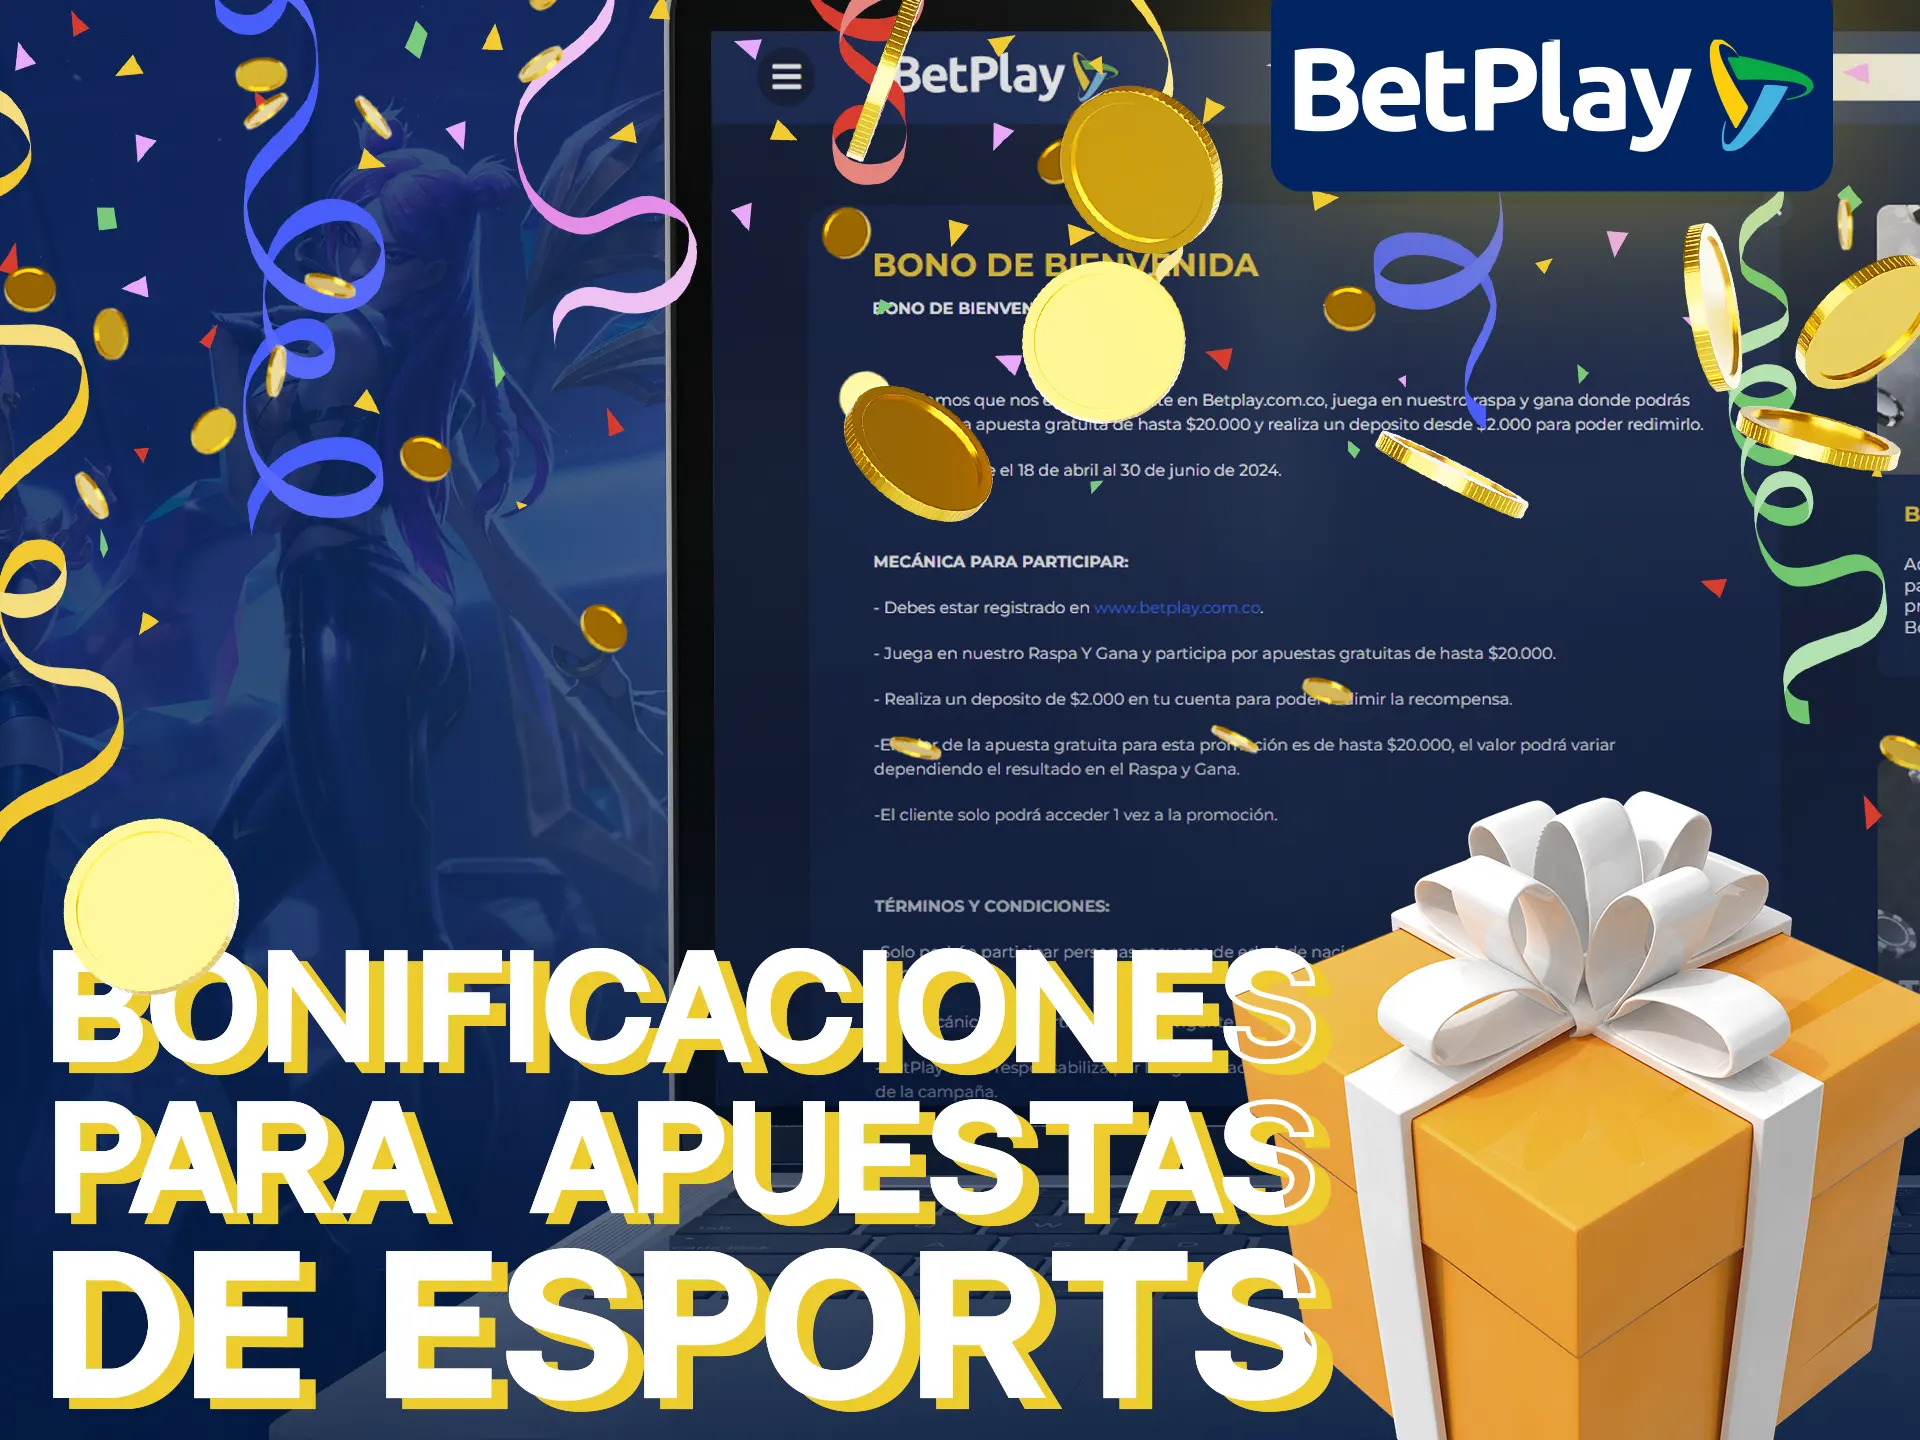 BetPlay ofrece un bono de deportes electrónicos con depósito del 100%.